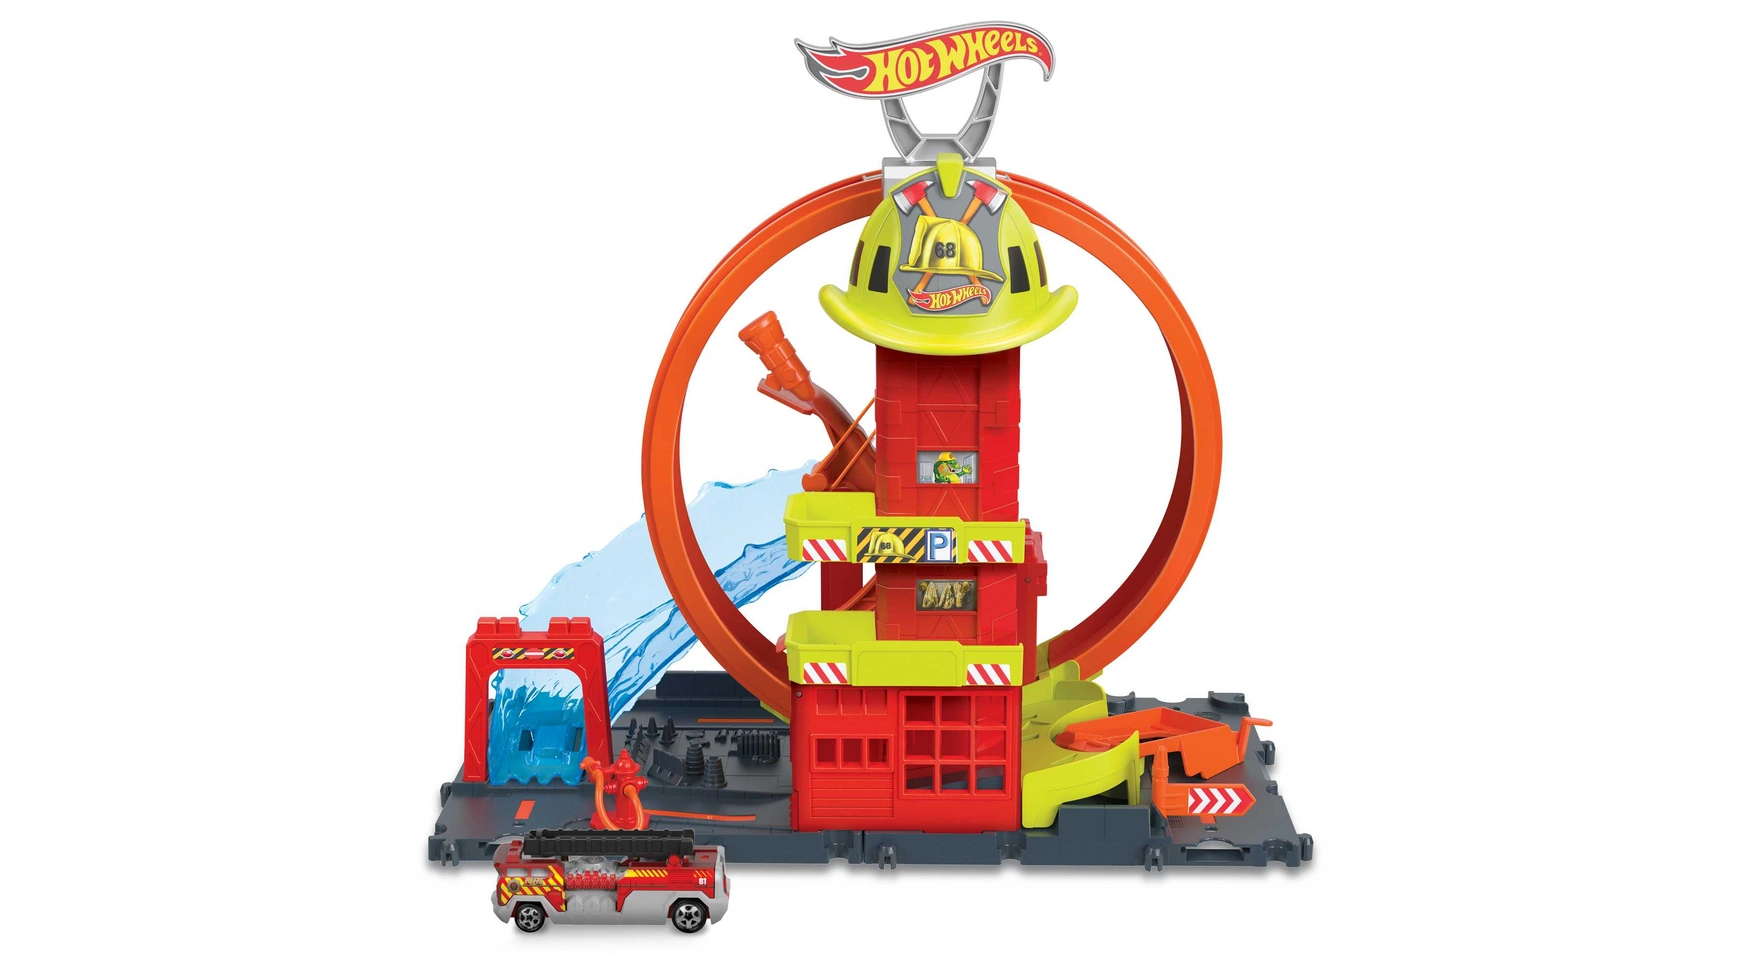 Hot wheels city super looping пожарная станция Mattel